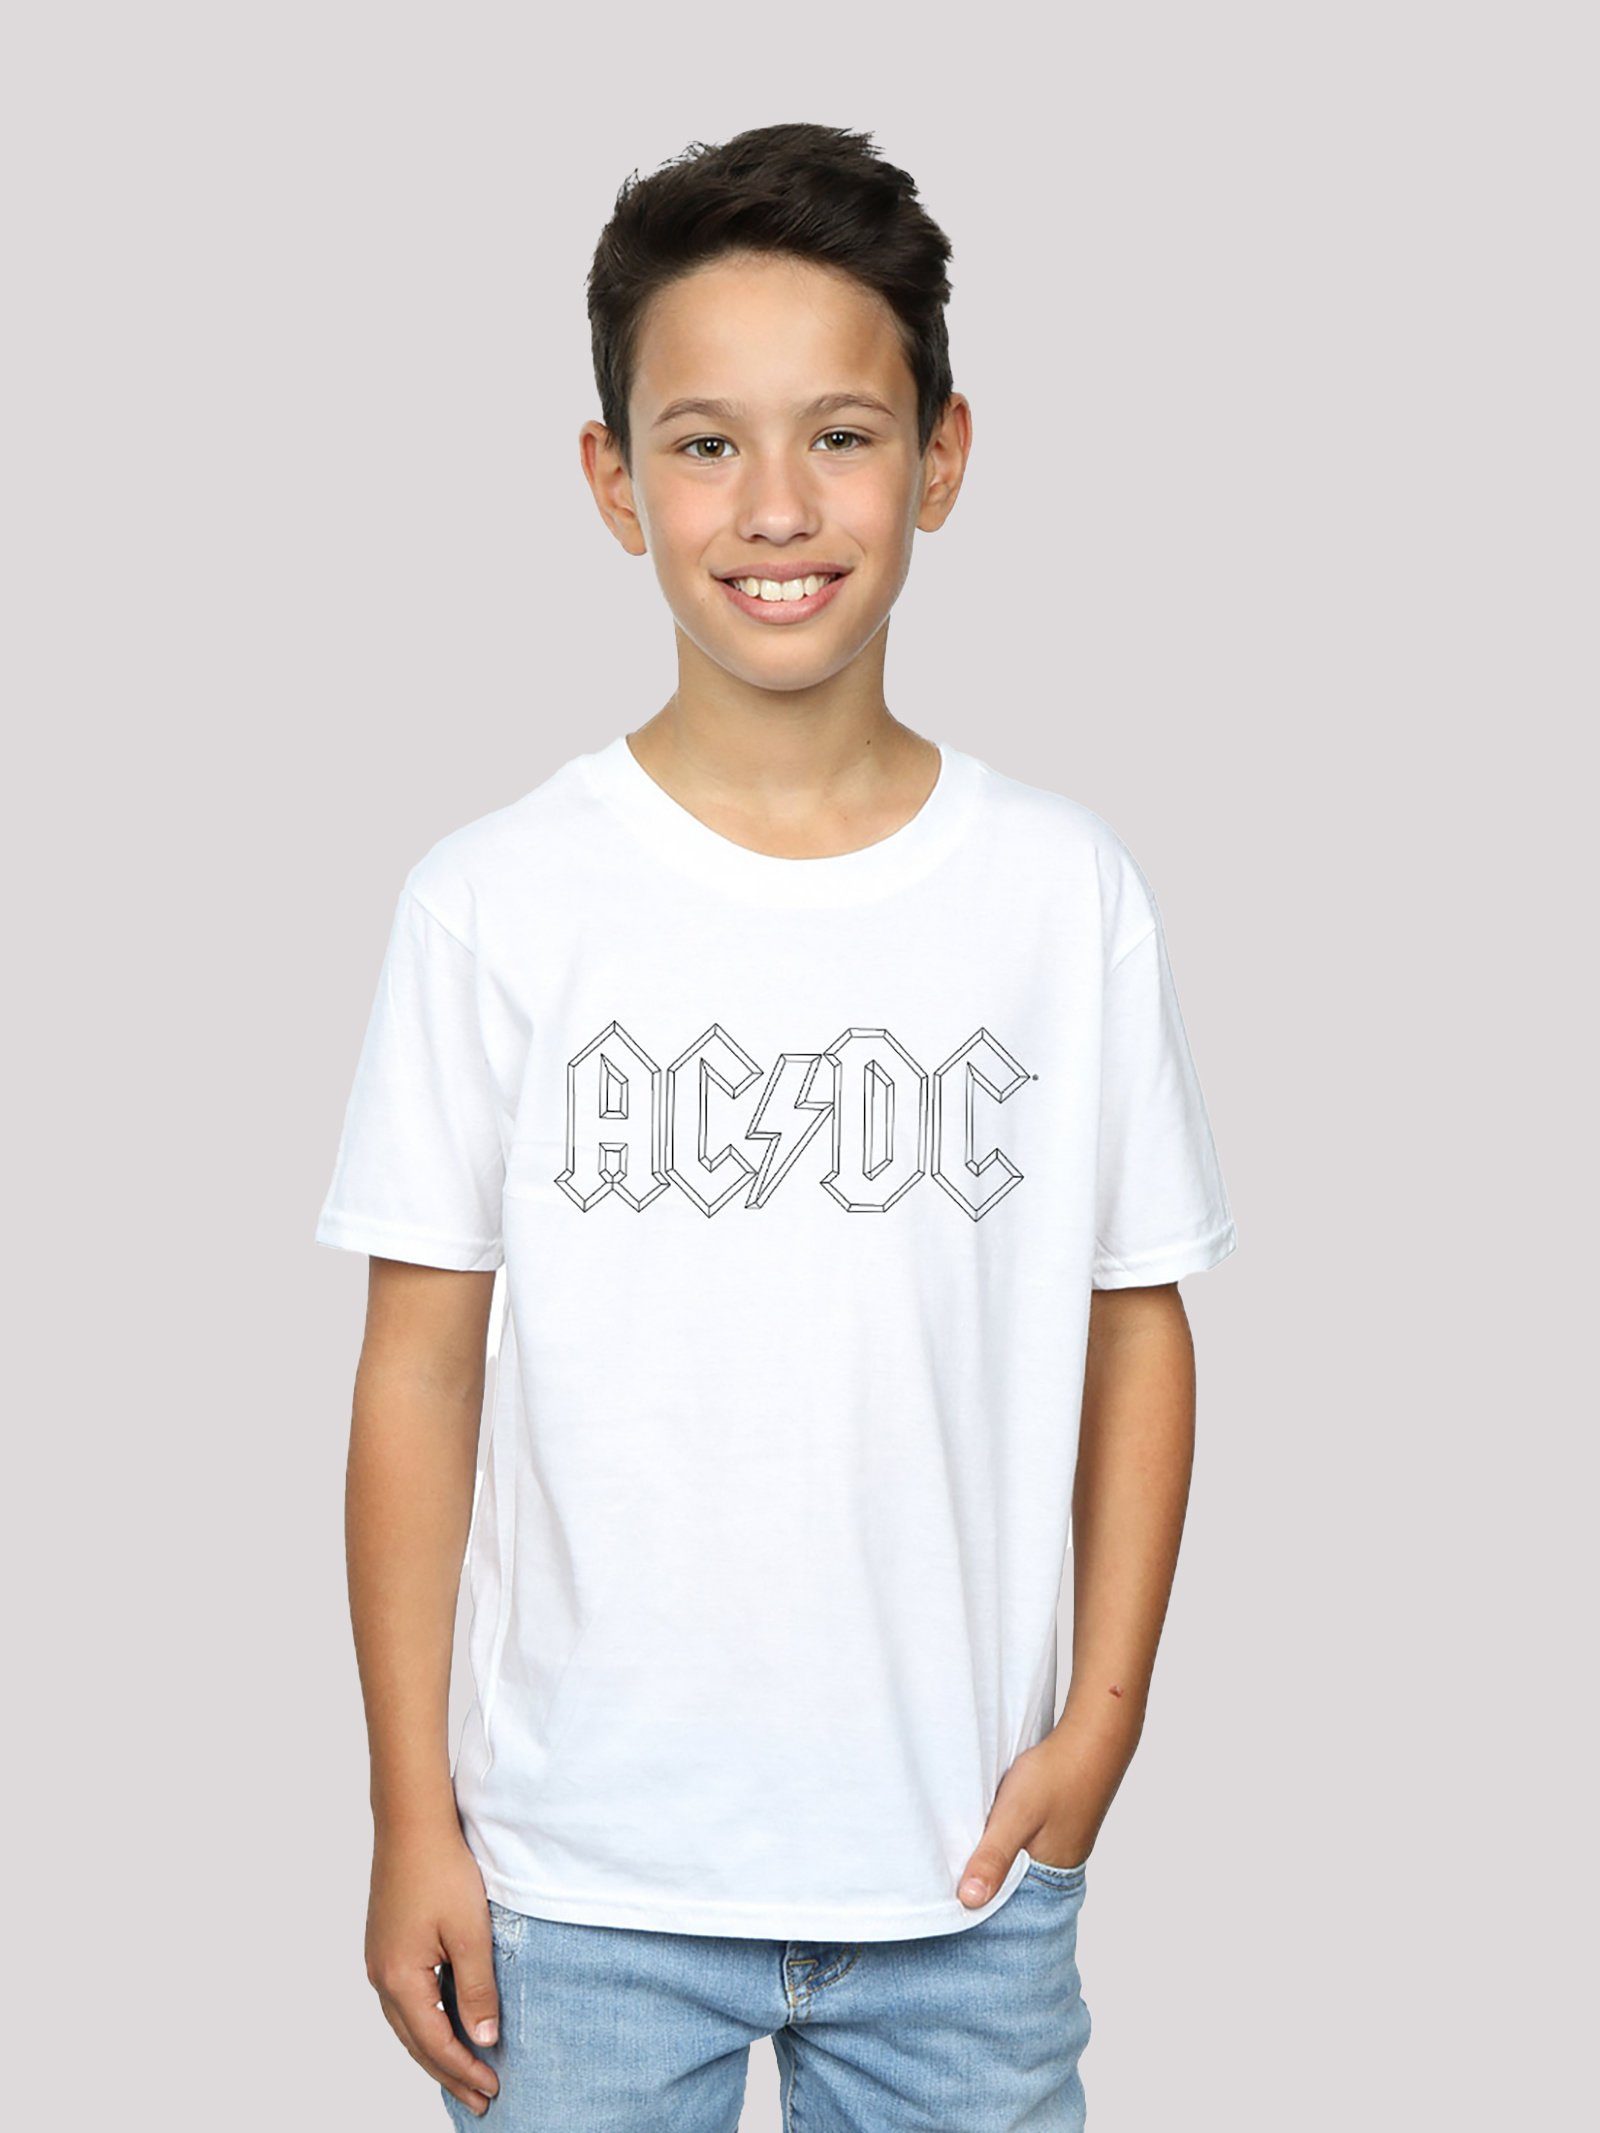 F4NT4STIC T-Shirt ACDC Black Outline Unisex Kinder,Premium Merch,Jungen,Mädchen,Bandshirt